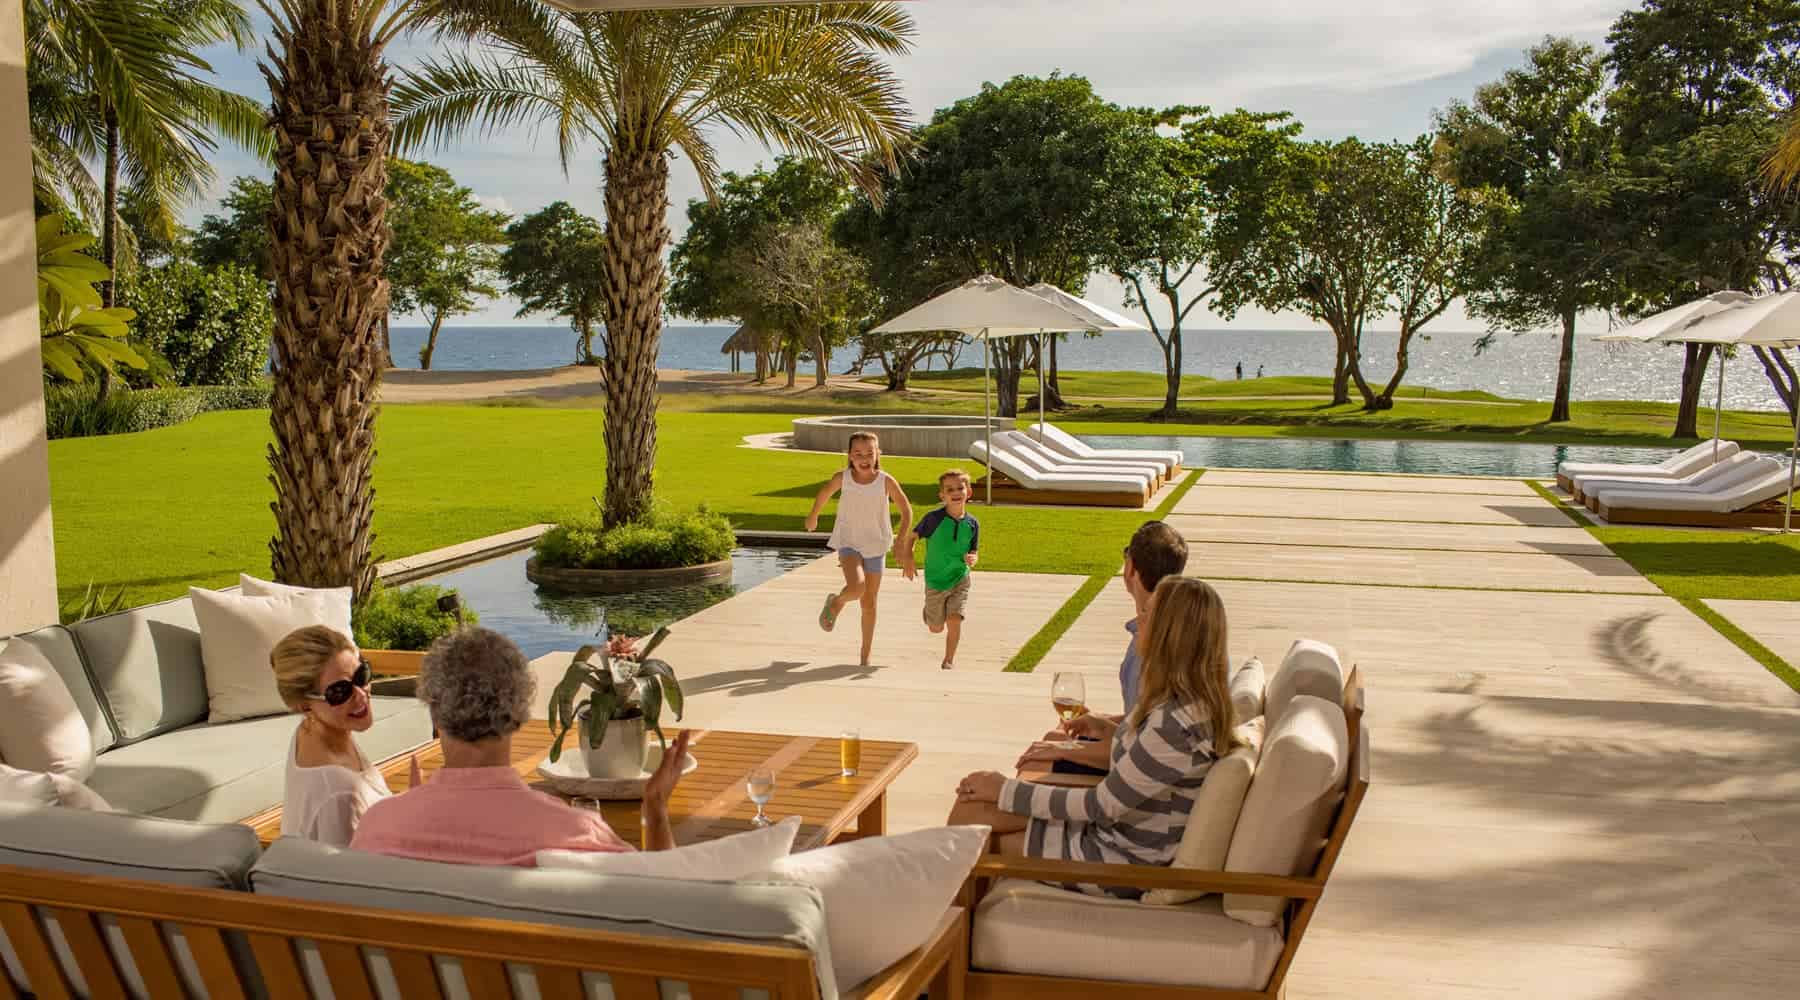 Poolside family vacation at Casa de Campo Luxury Resort & Villas.